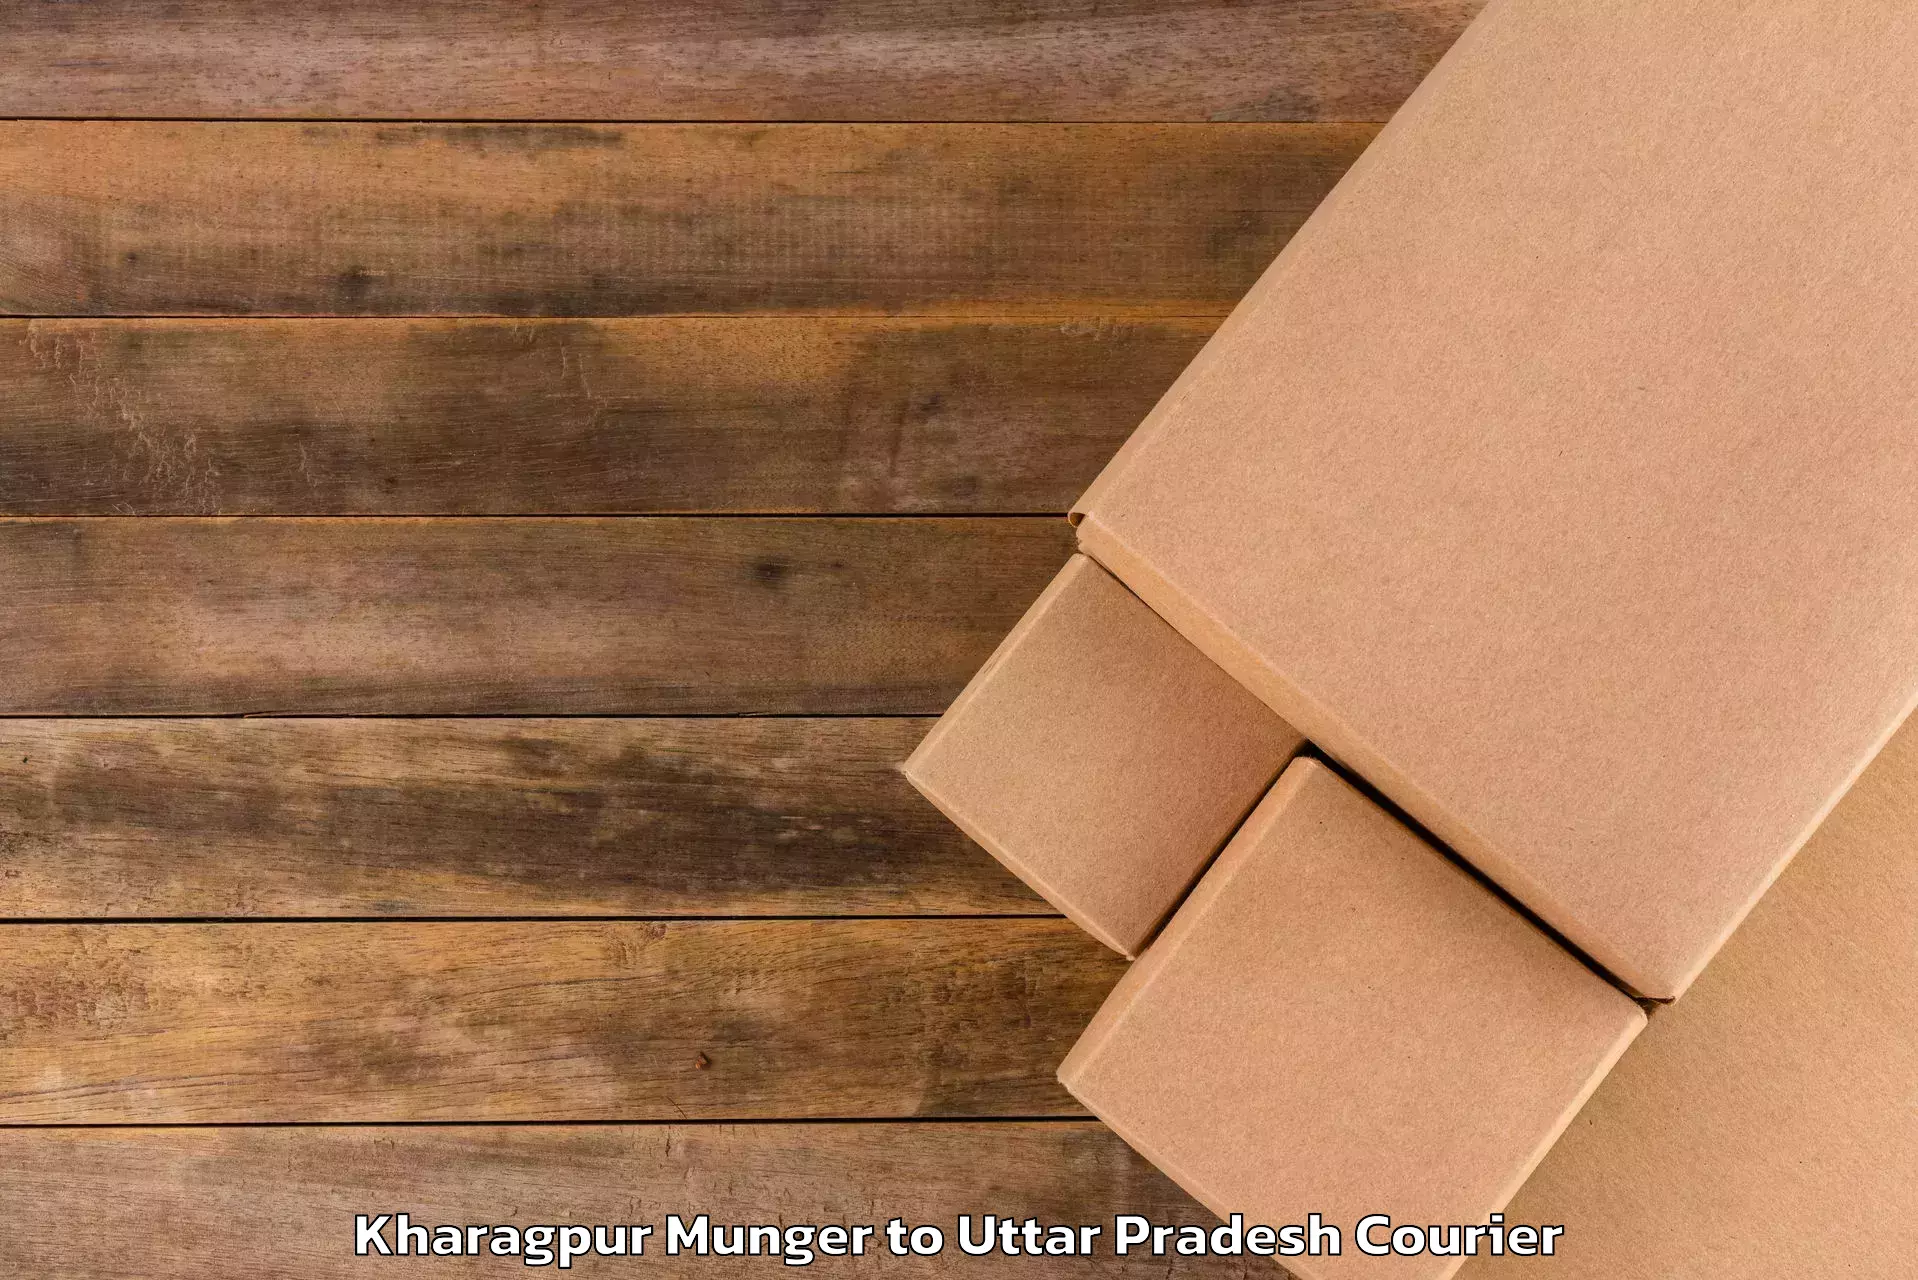 Direct baggage courier Kharagpur Munger to Kumarganj